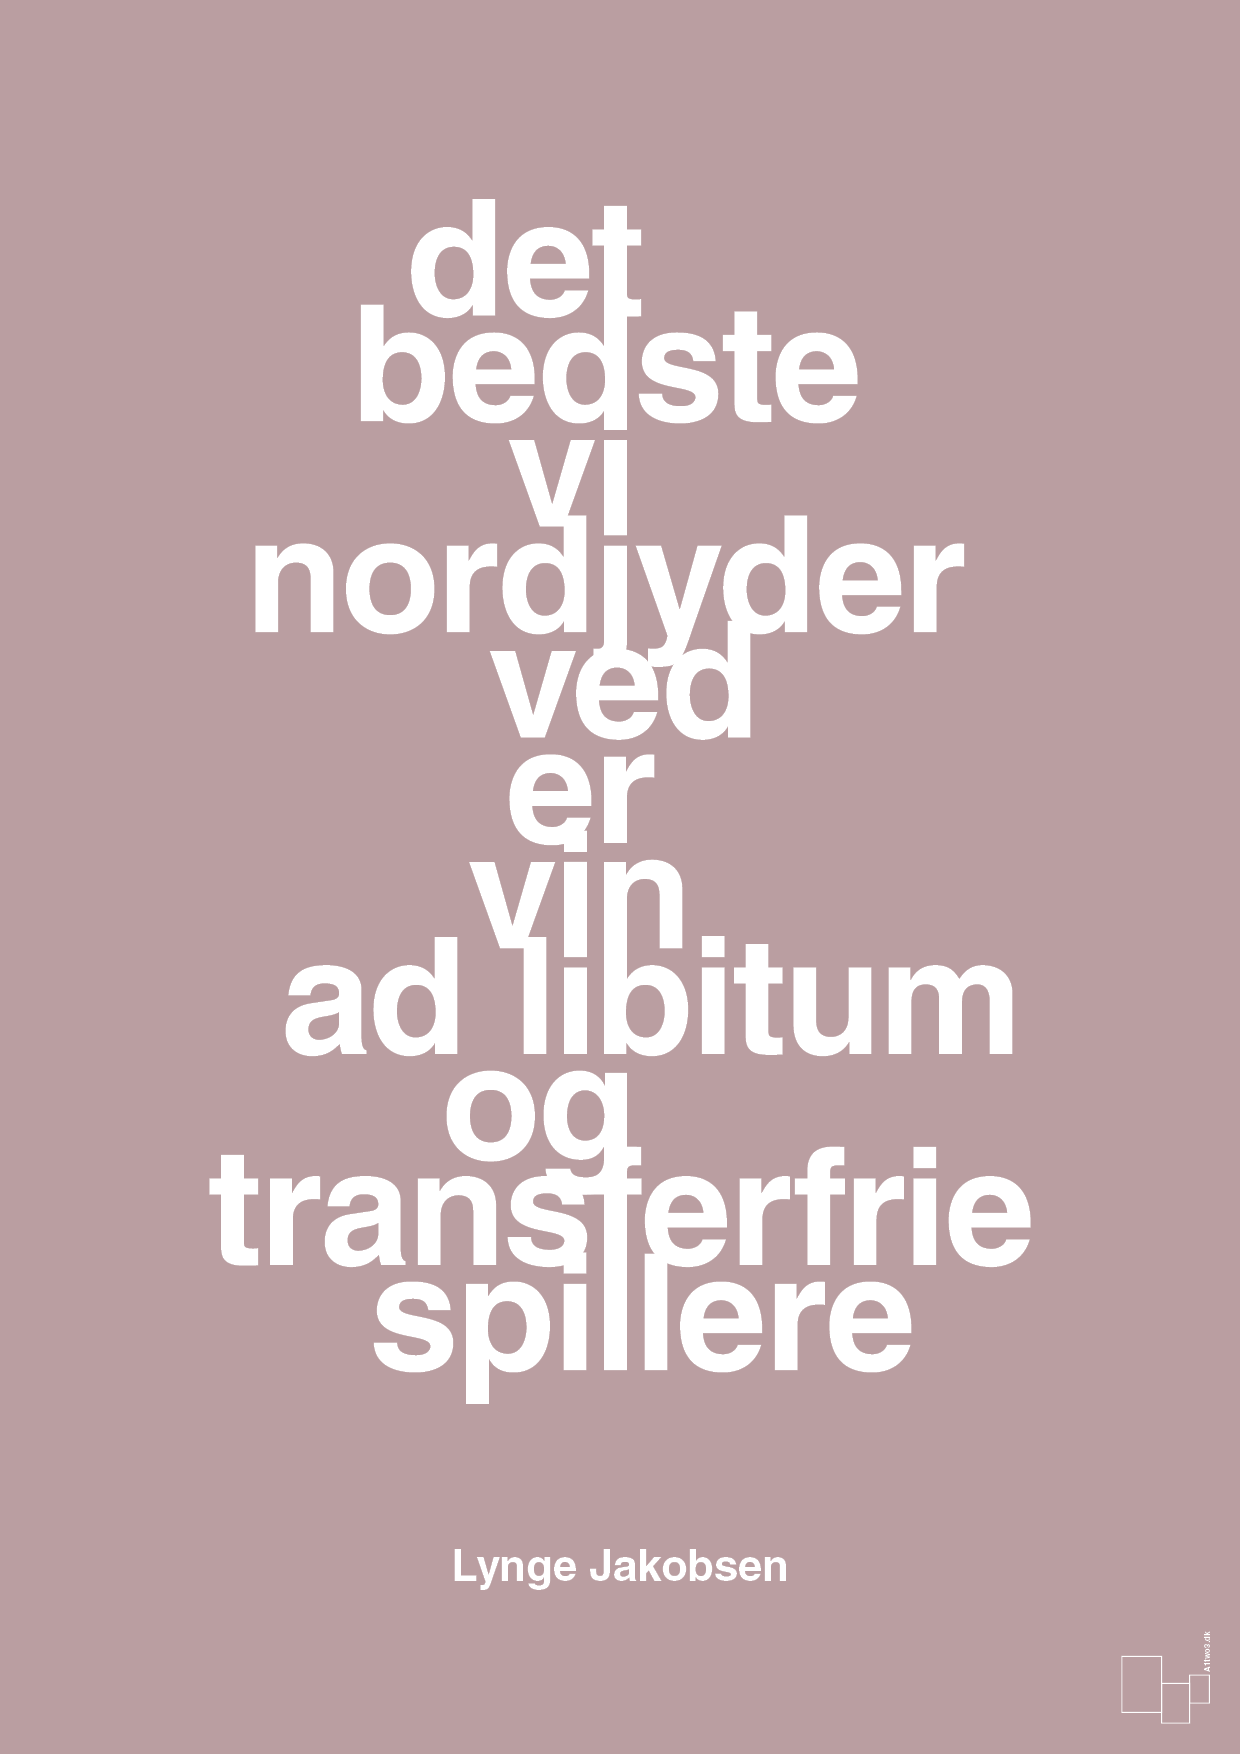 det bedste vi nordjyder ved er vin ad libitum og transferfrie spillere - Plakat med Citater i Light Rose